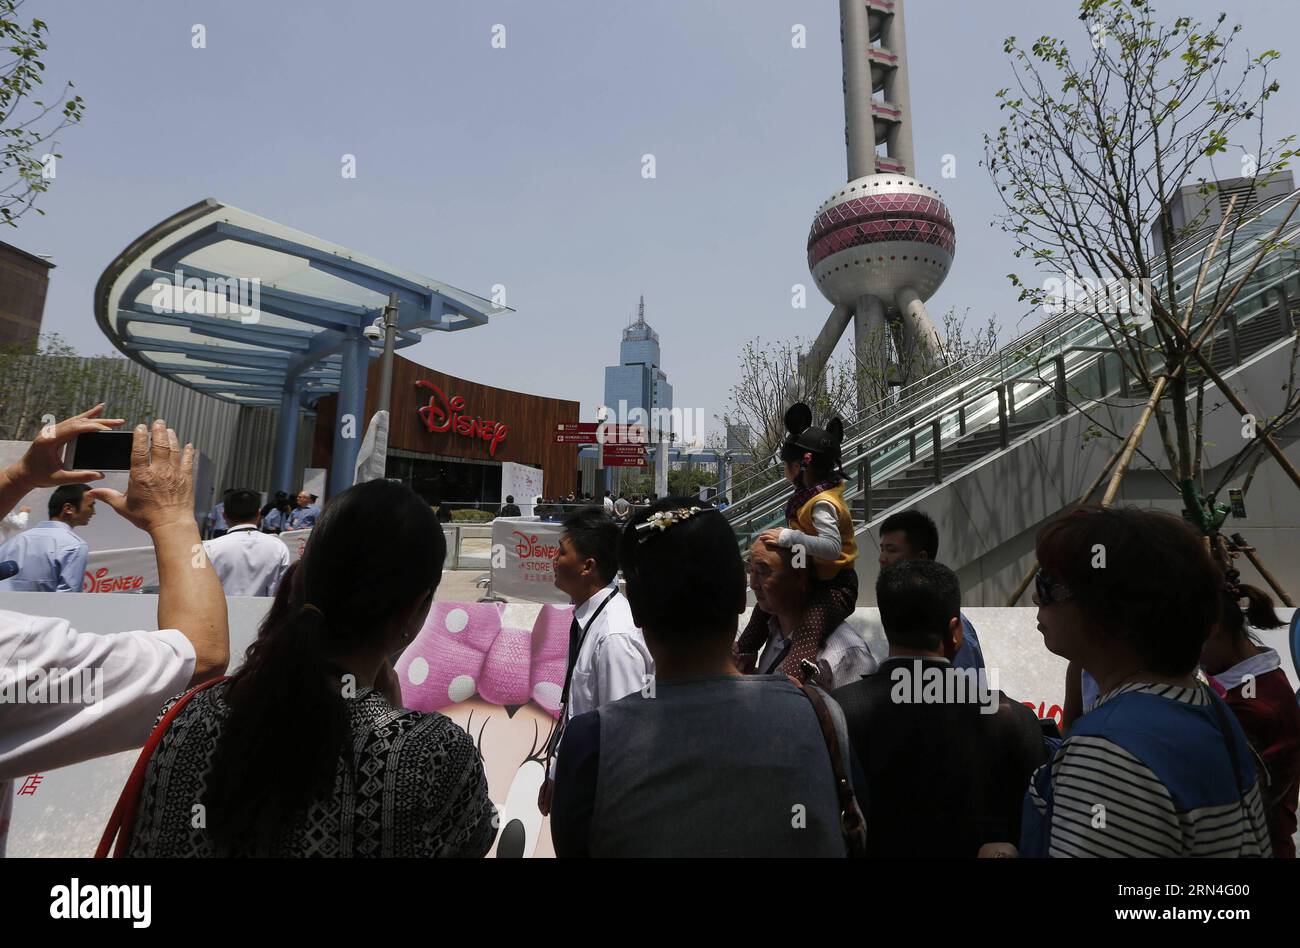 (150520) -- SHANGHAI, 20. Mai 2015 -- Menschen machen Fotos vom Disney Flagship Store in Shanghai, Ostchina, 20. Mai 2015. Das Geschäft, das eine Fläche von 5.860 Quadratmetern im Geschäftsviertel Lujiazui einnimmt, wurde am Mittwoch eröffnet. ) (wyo) CHINA-SHANGHAI-DISNEY STORE-OPEN (CN) DingxTing PUBLICATIONxNOTxINxCHN 150520 Shanghai 20. Mai 2015 Prominente fotografieren den Disney Flagship Store in Shanghai Ostchina 20. Mai 2015 der Store mit einer Fläche von 5 860 QUADRATMETERN im Lujiazui Business District, was AM Mittwoch eröffnet wurde wyo China Shanghai Disney Store öffnen Sie CN DingxTing PUBLIC Stockfoto